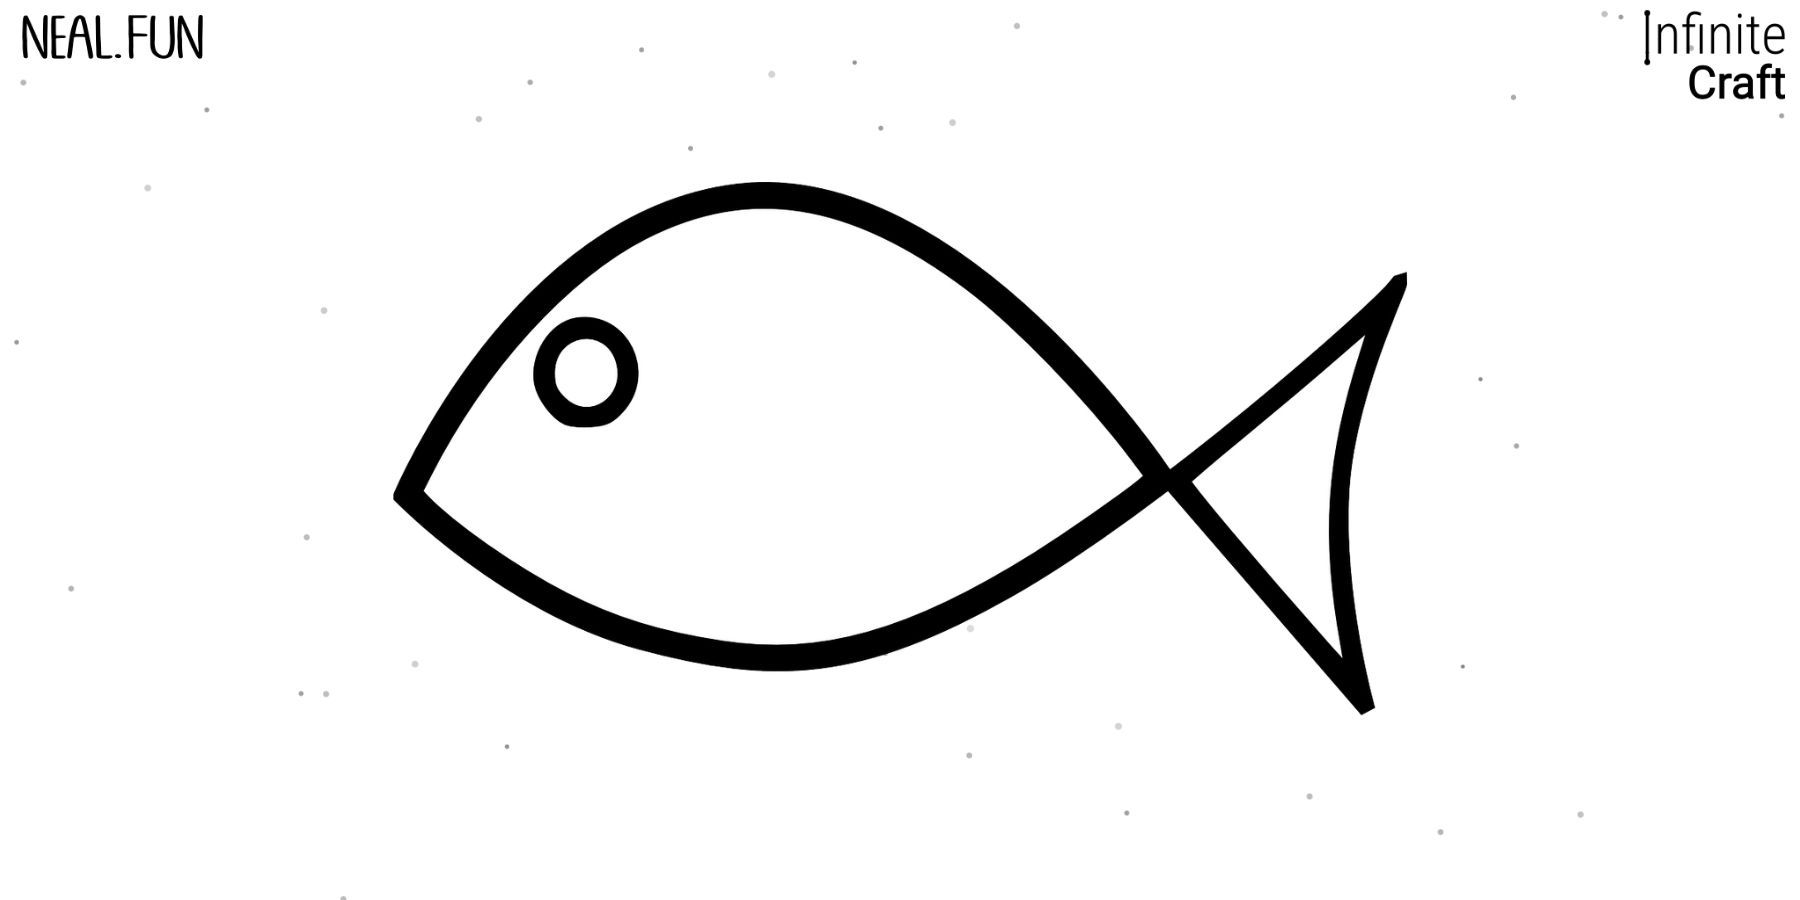 Подробнее о статье Infinite Craft: как сделать рыбу